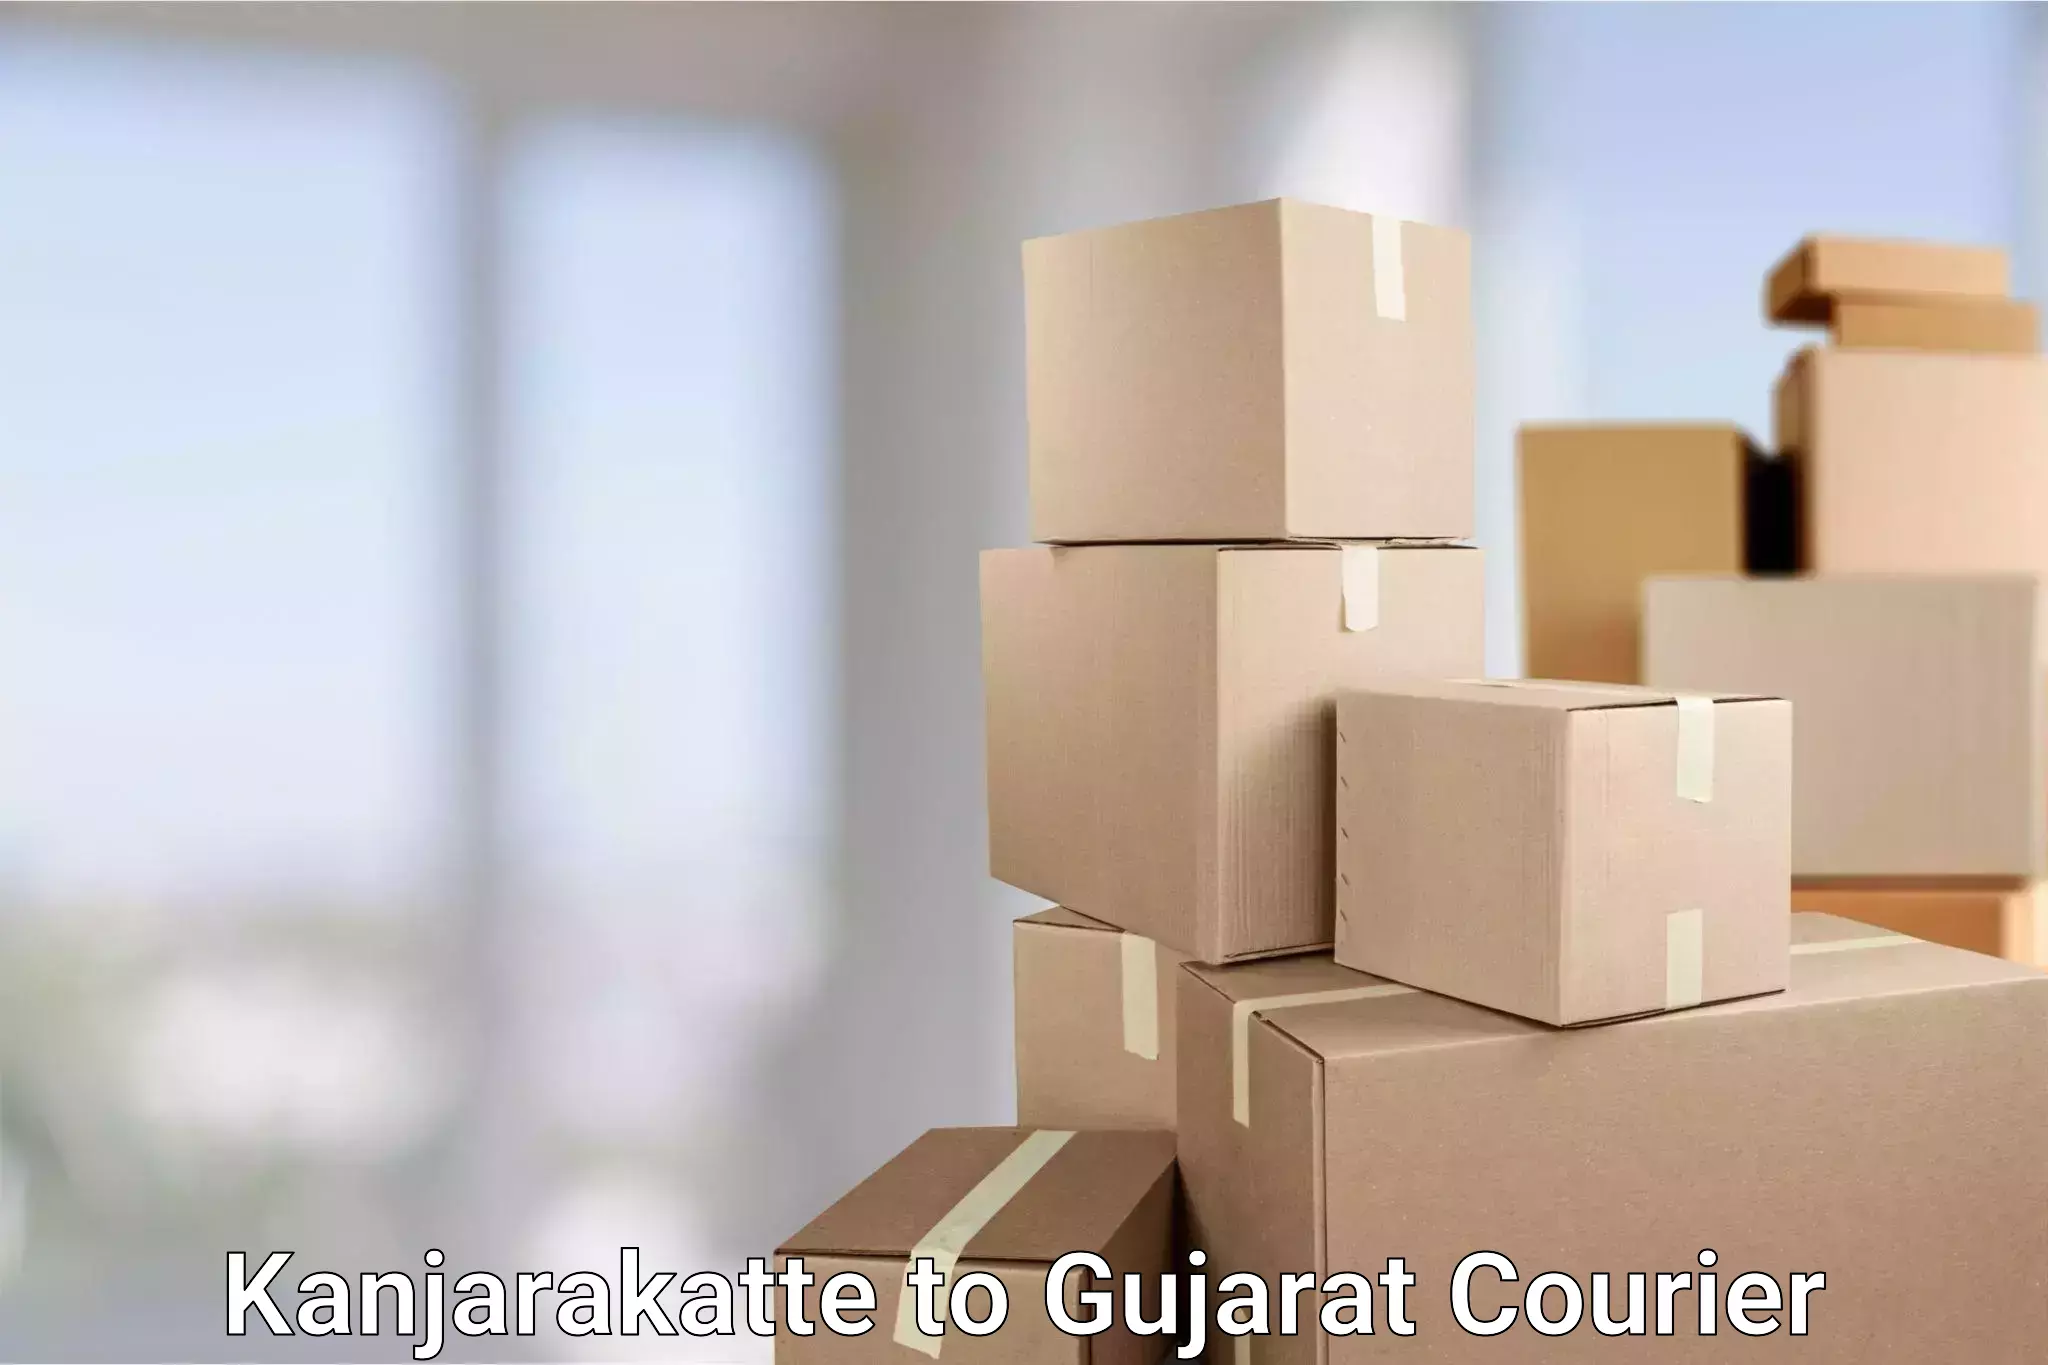 24/7 courier service Kanjarakatte to Gujarat